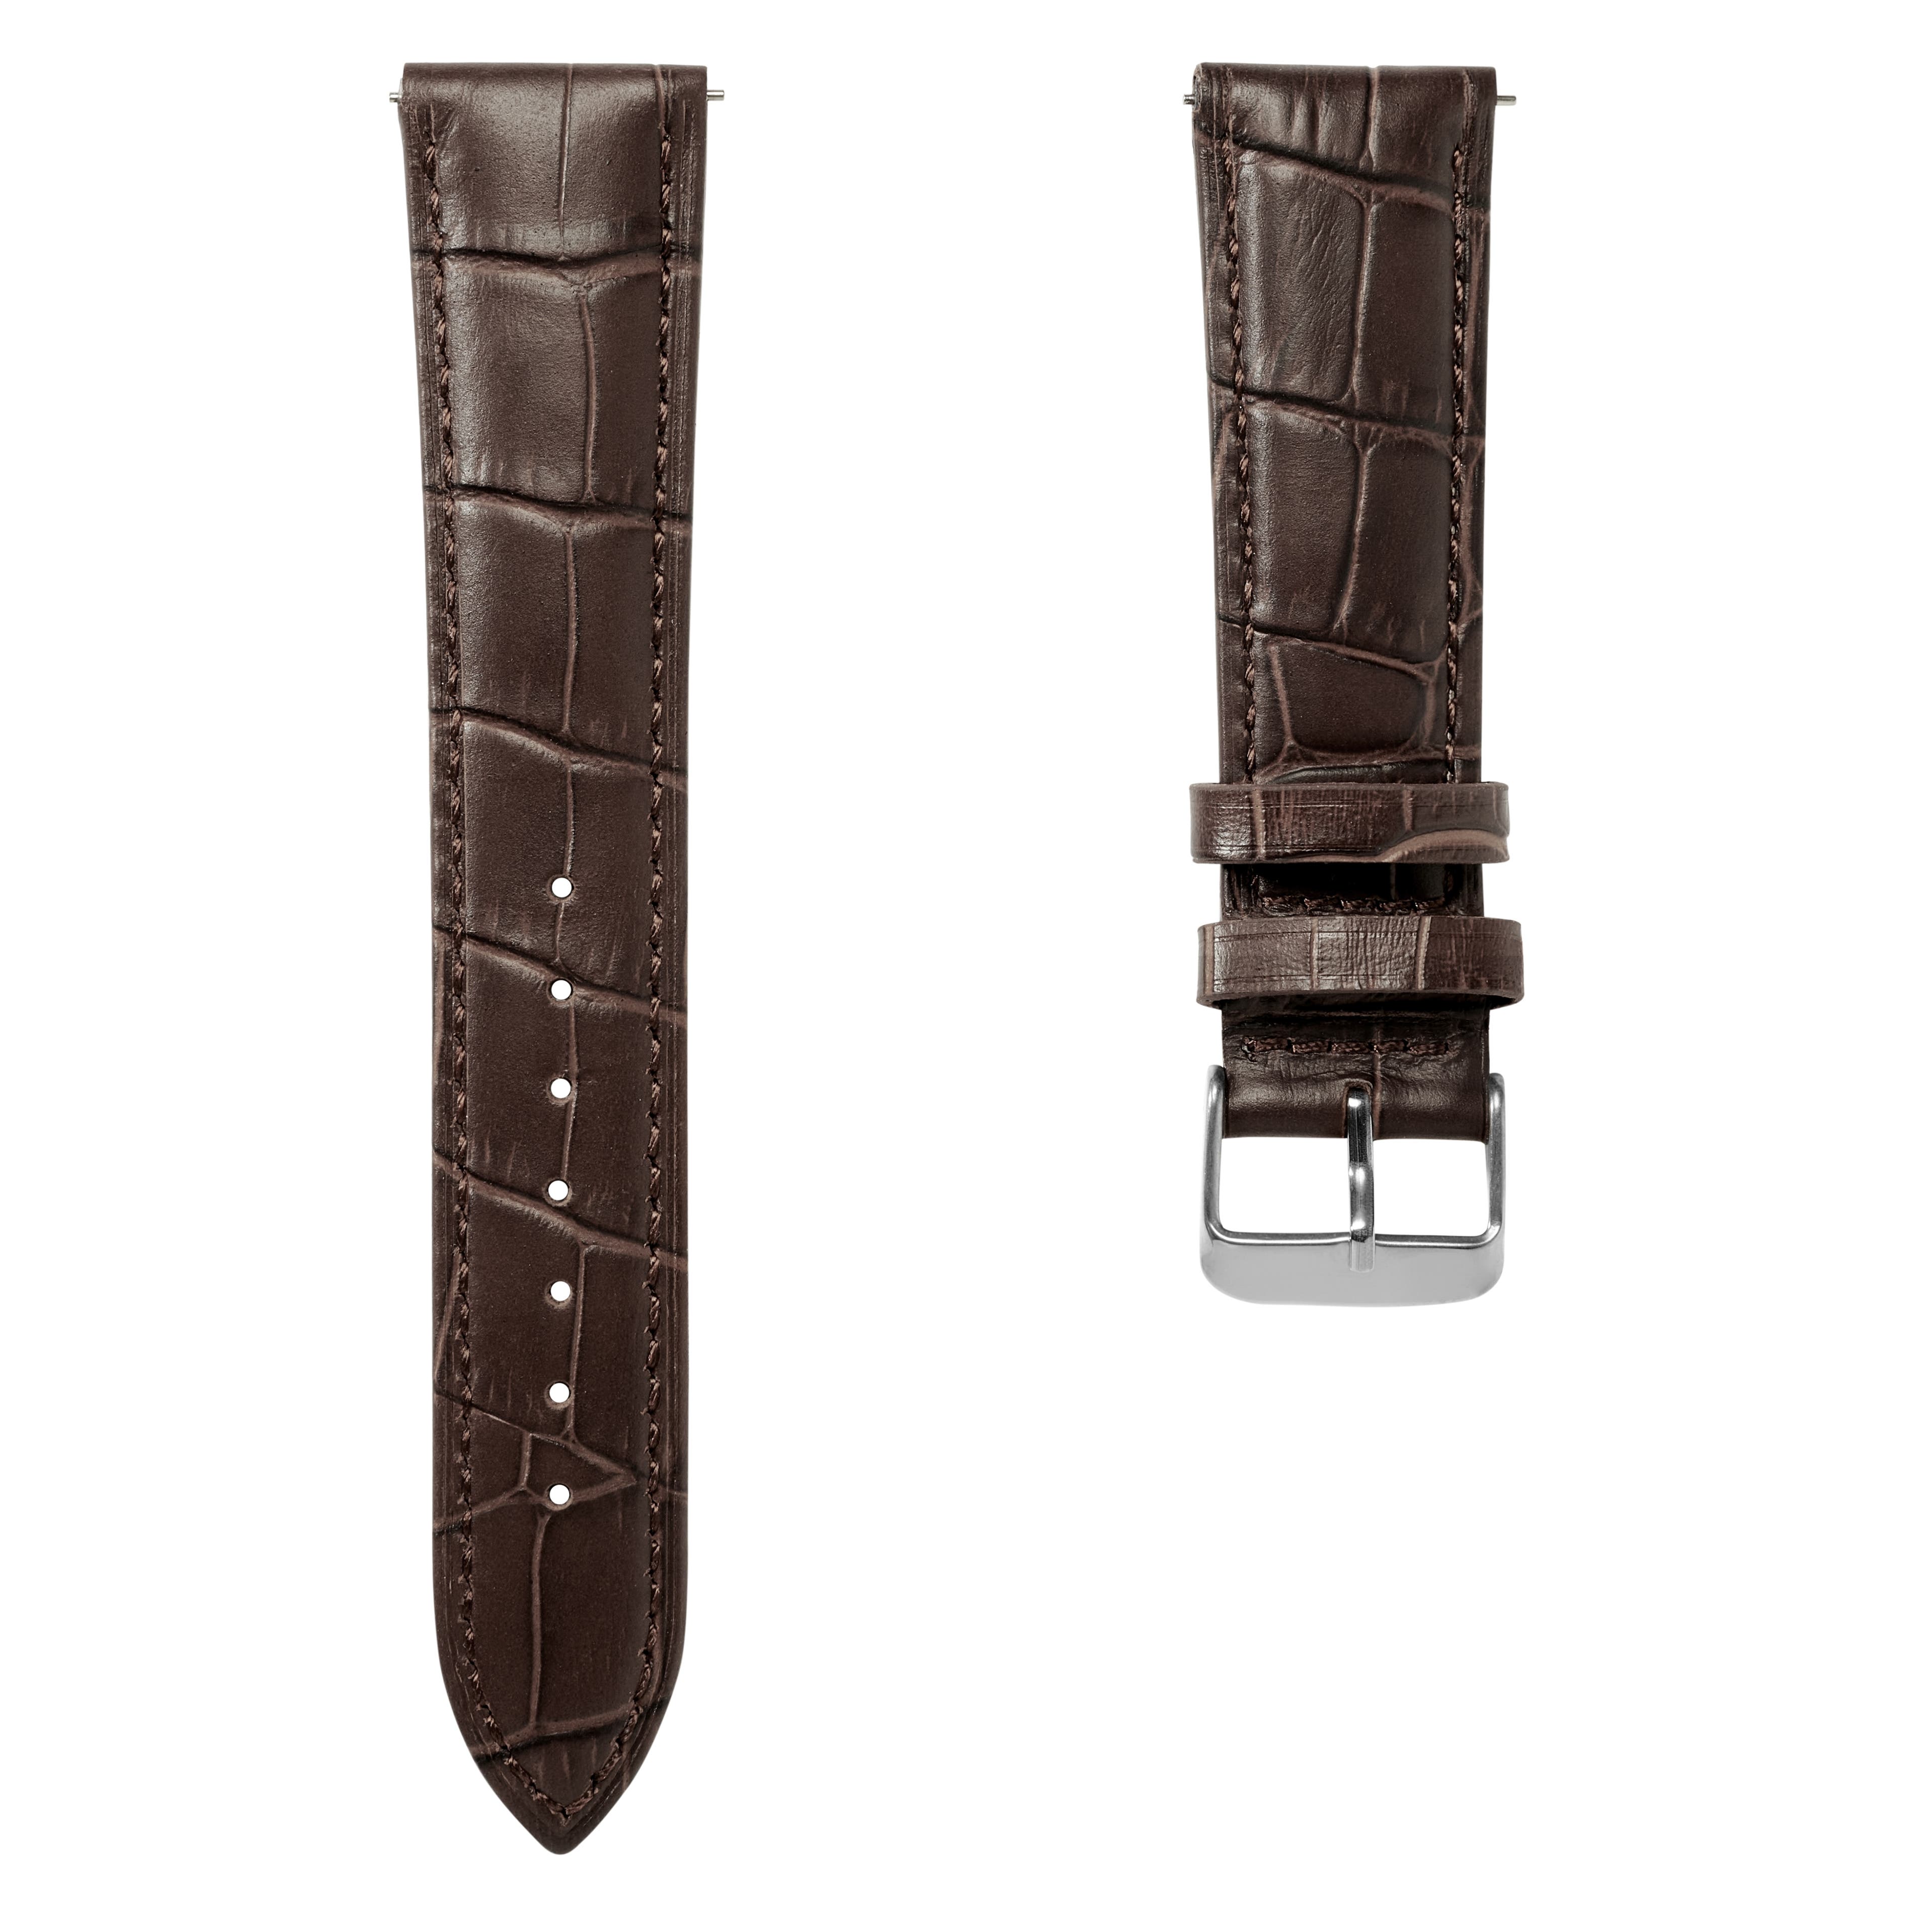 Correa de reloj de cuero marrón oscuro con relieve de cocodrilo y hebilla plateada de 20 mm - Liberación rápida